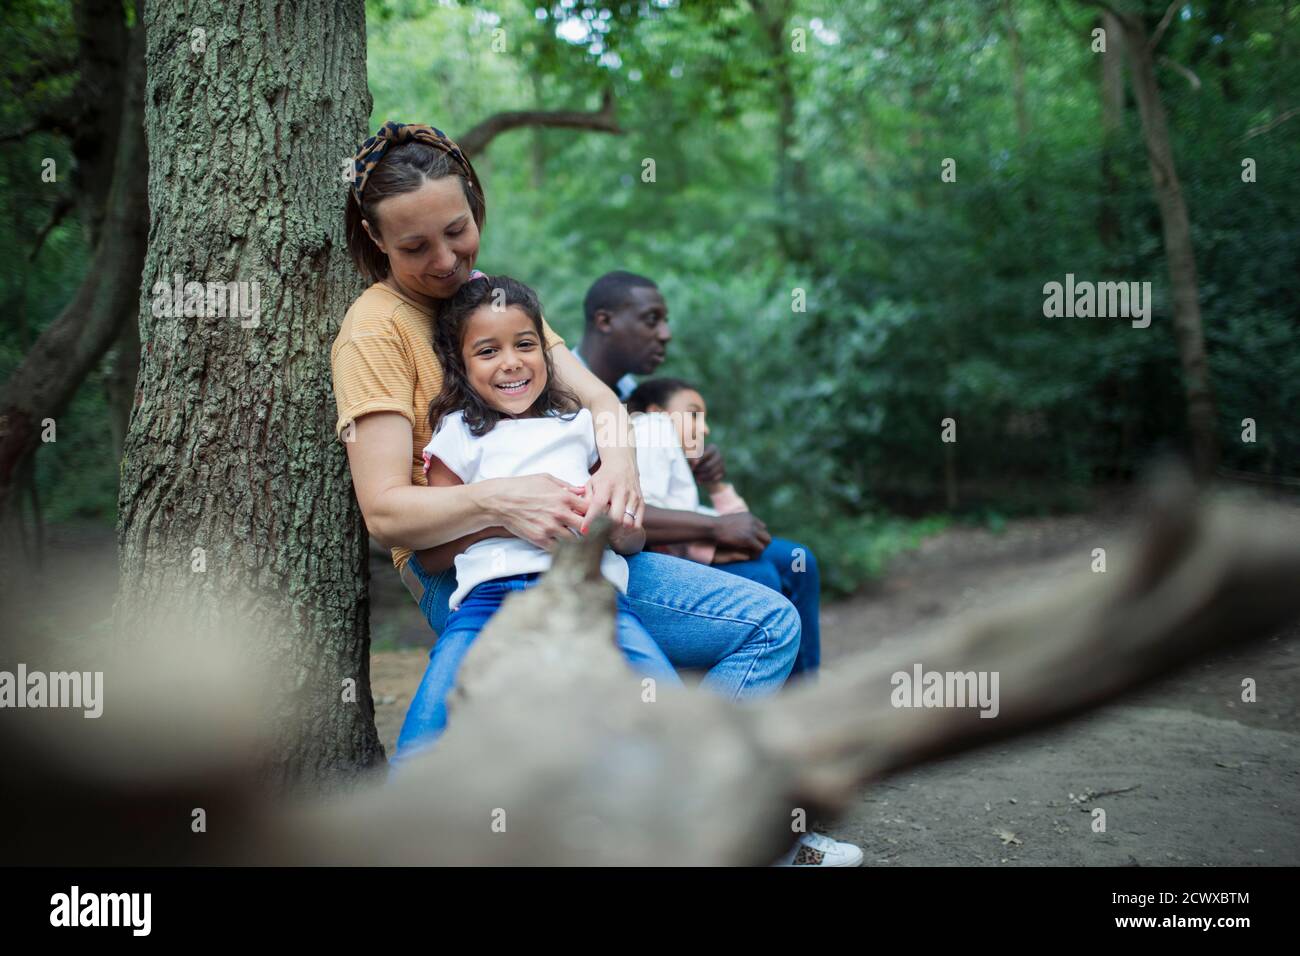 Une famille heureuse se détendant sur une bûche tombée lors d'une randonnée dans les bois Banque D'Images